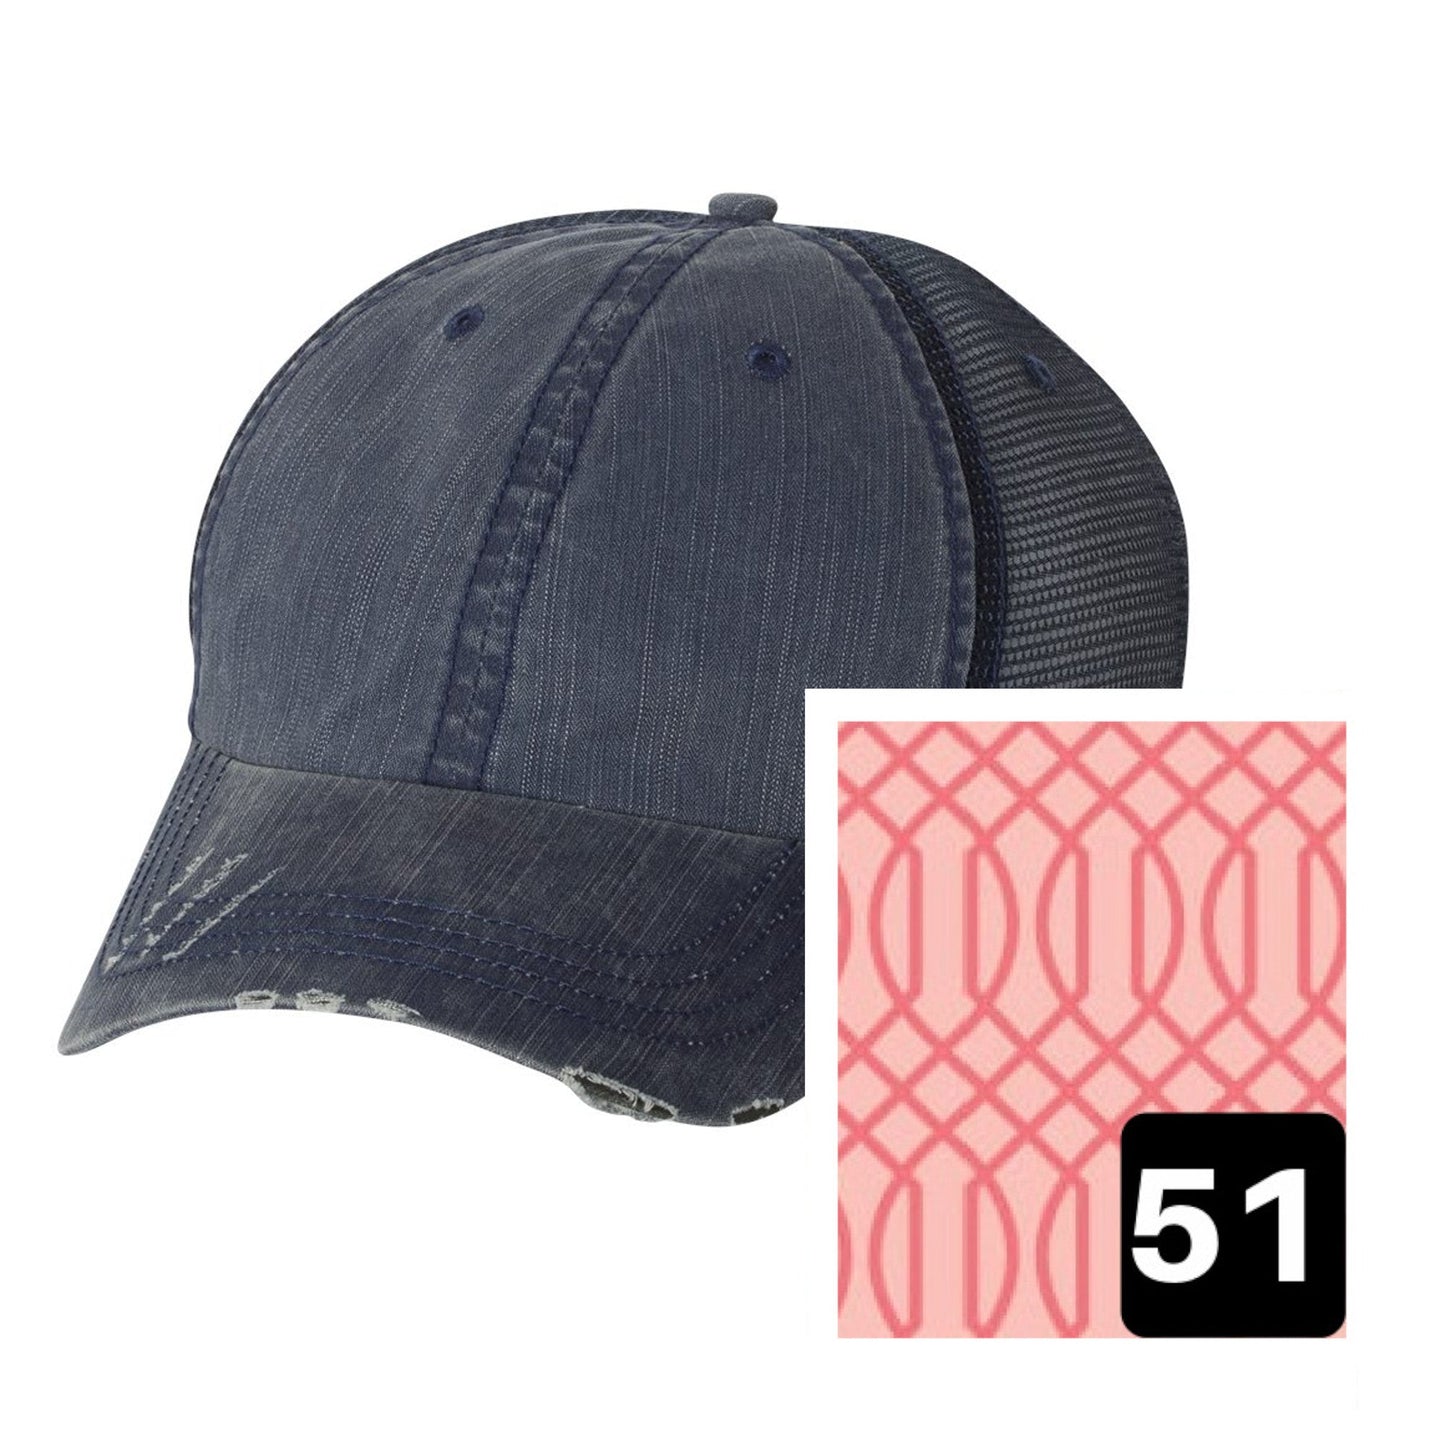 Arizona Hat | Navy Distressed Trucker Cap | Many Fabric Choices